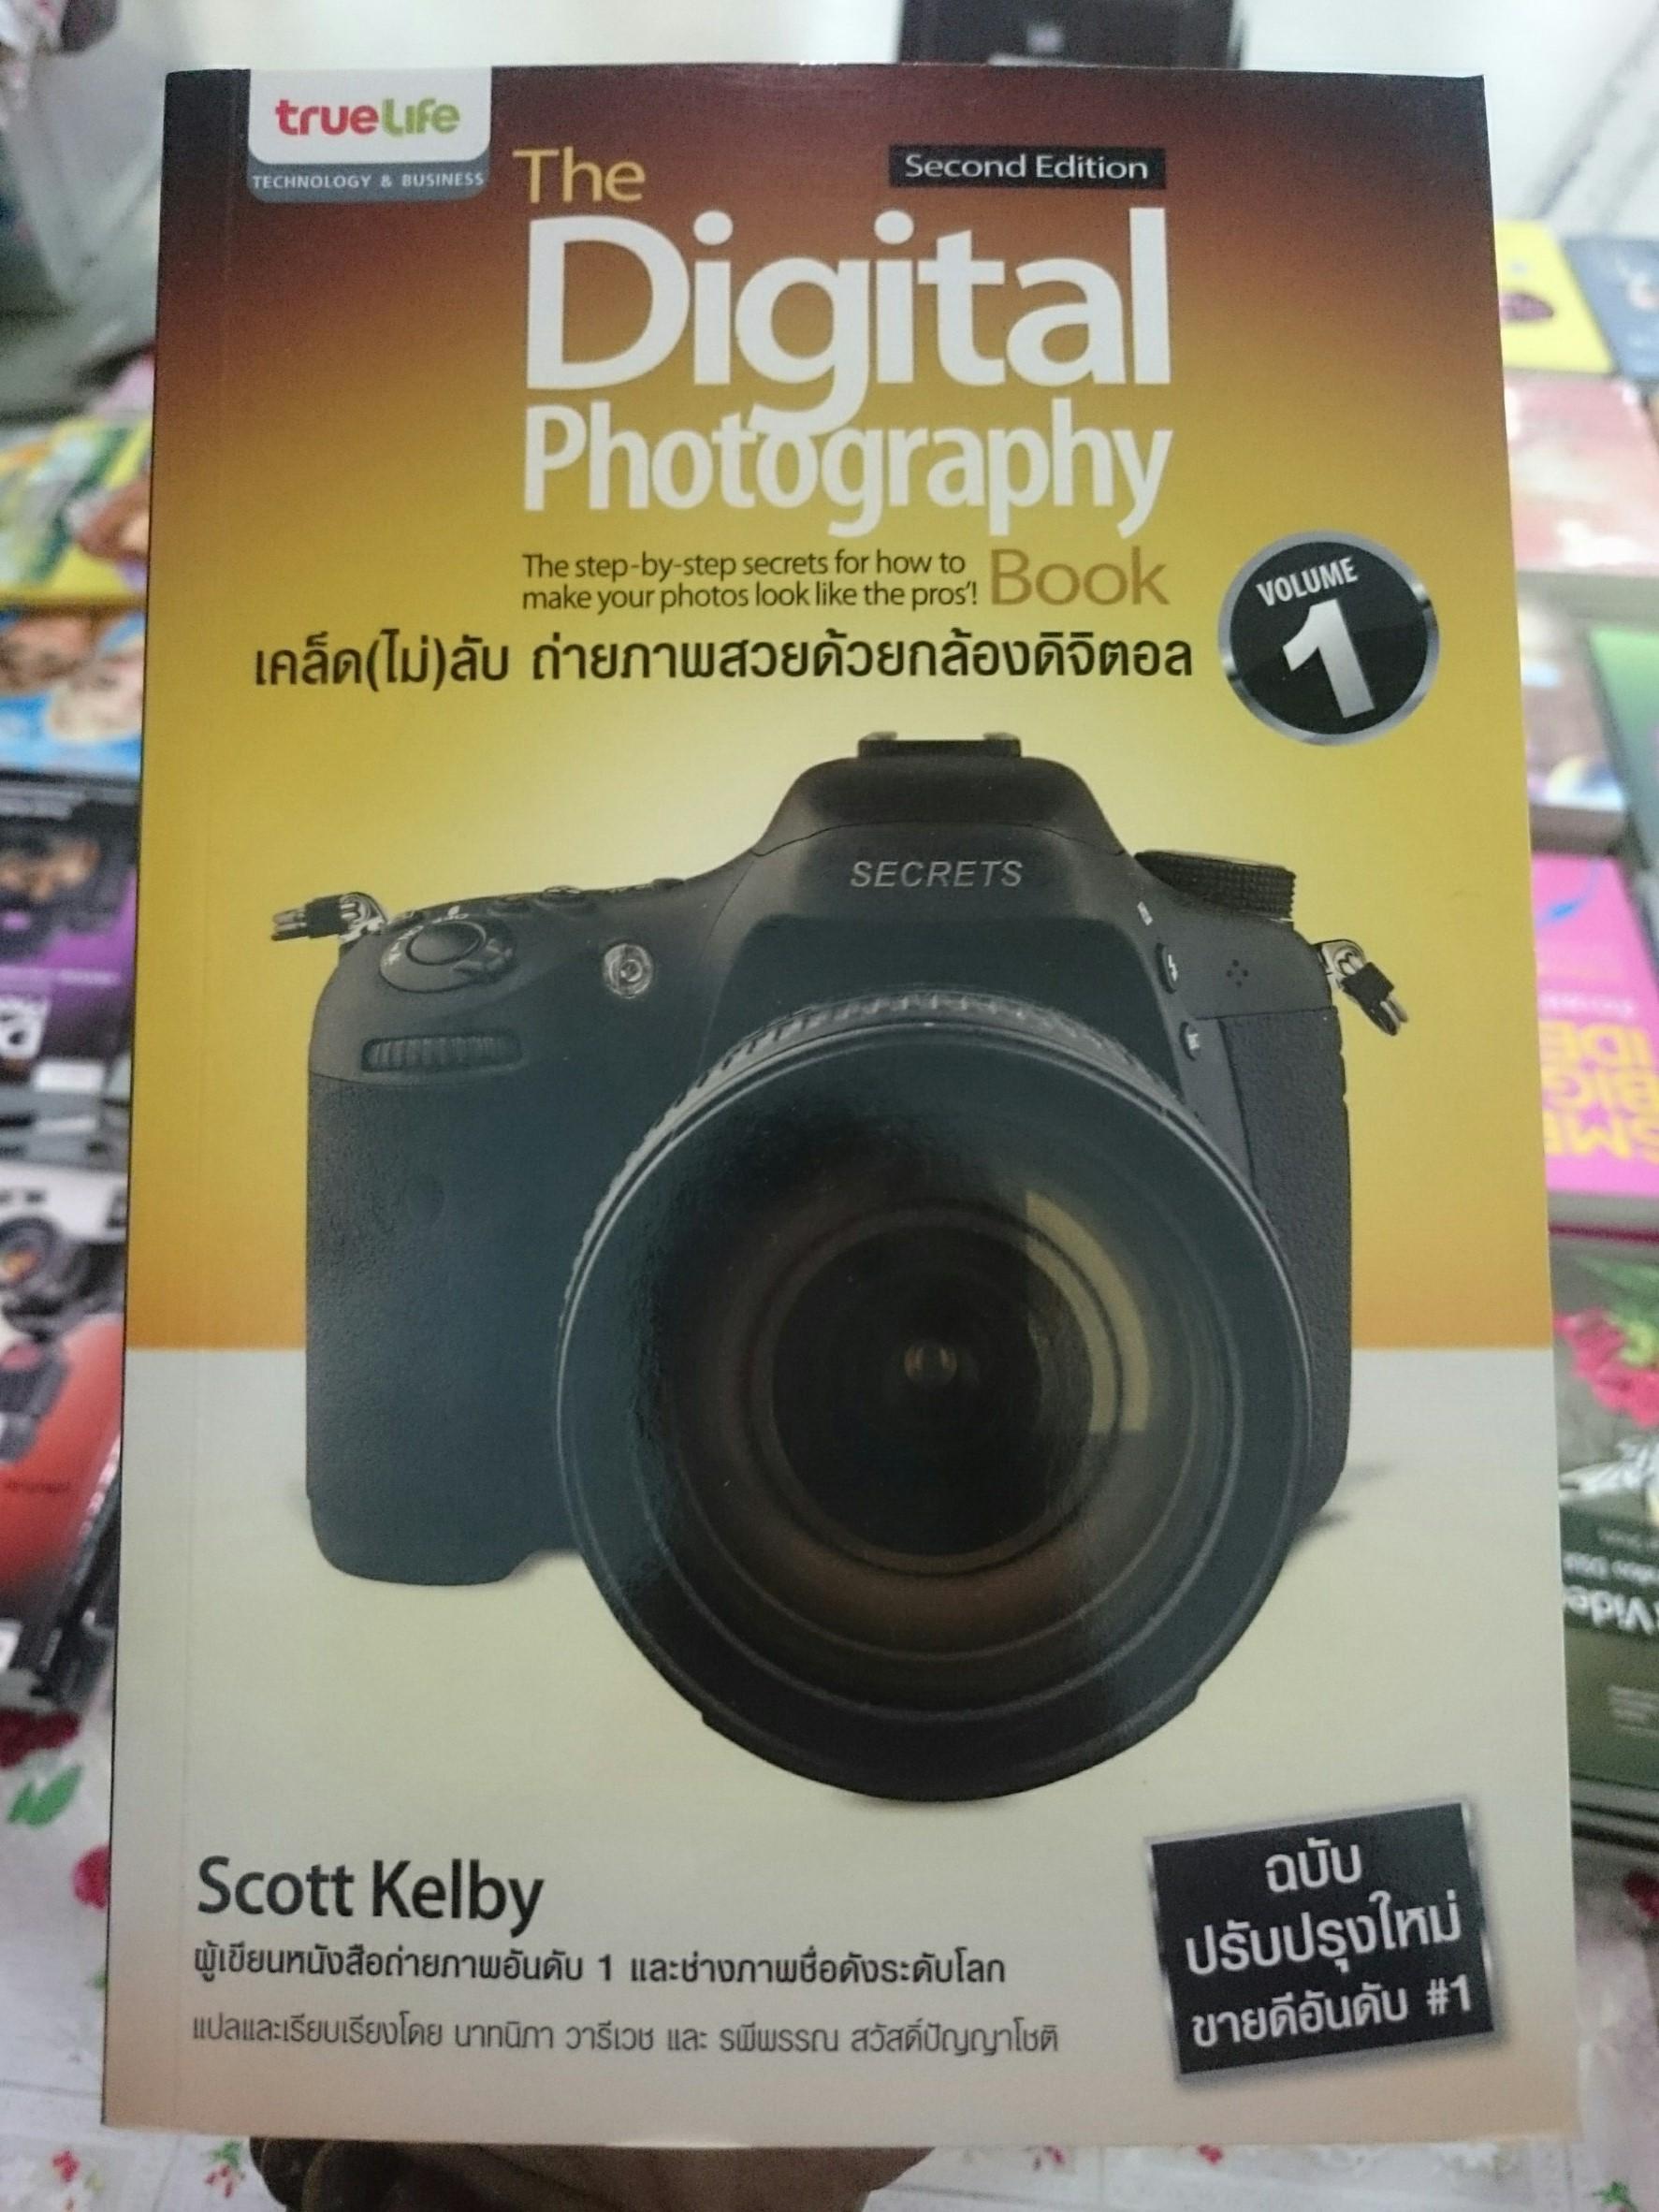 เคล็ด (ไม่) ลับ ถ่ายภาพสวยด้วยกล้องดิจิตอล เล่ม 1 : The Digital Photography Book Vol.1